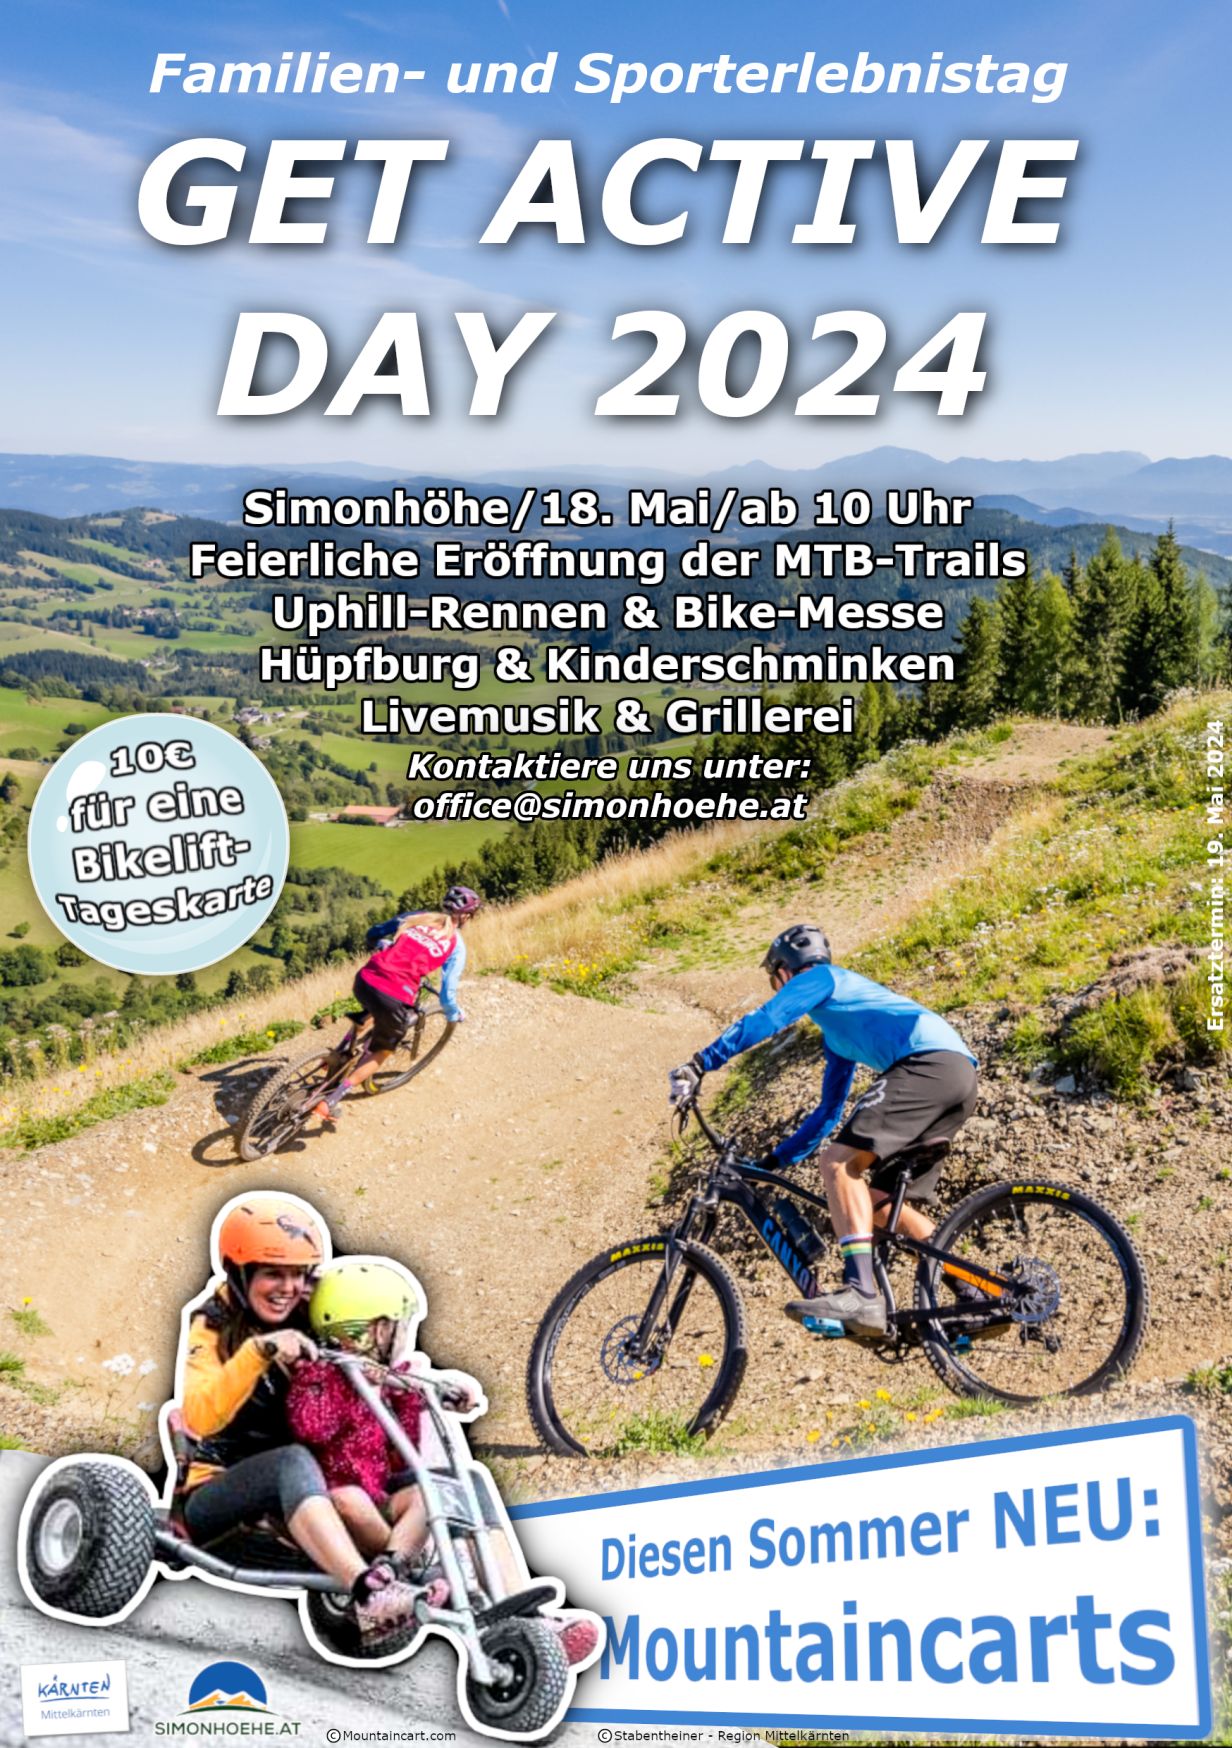 Sommerevent "Get Active Day" für Familien und Sportbegeisterte auf der Simonhöhe inklusive Eröffnung der Mountainbike-Saison